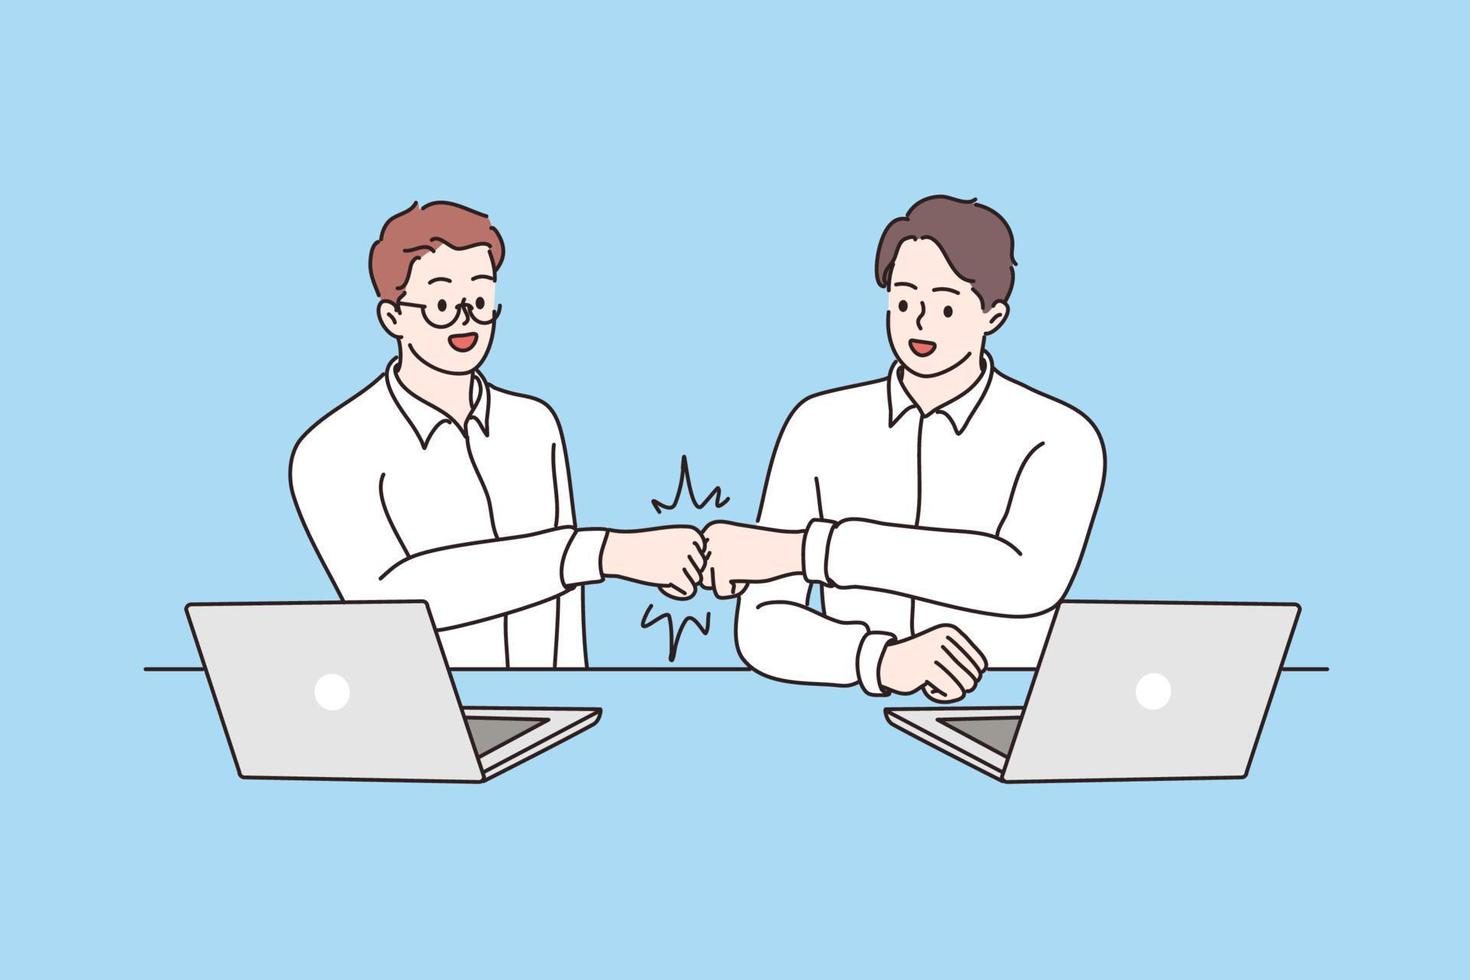 éxito, cooperación, concepto de acuerdo. trabajadores de socios de negocios jóvenes masculinos sonrientes sentados y dándose la mano, lo que significa colaboración y acuerdo en la ilustración de vector de oficina